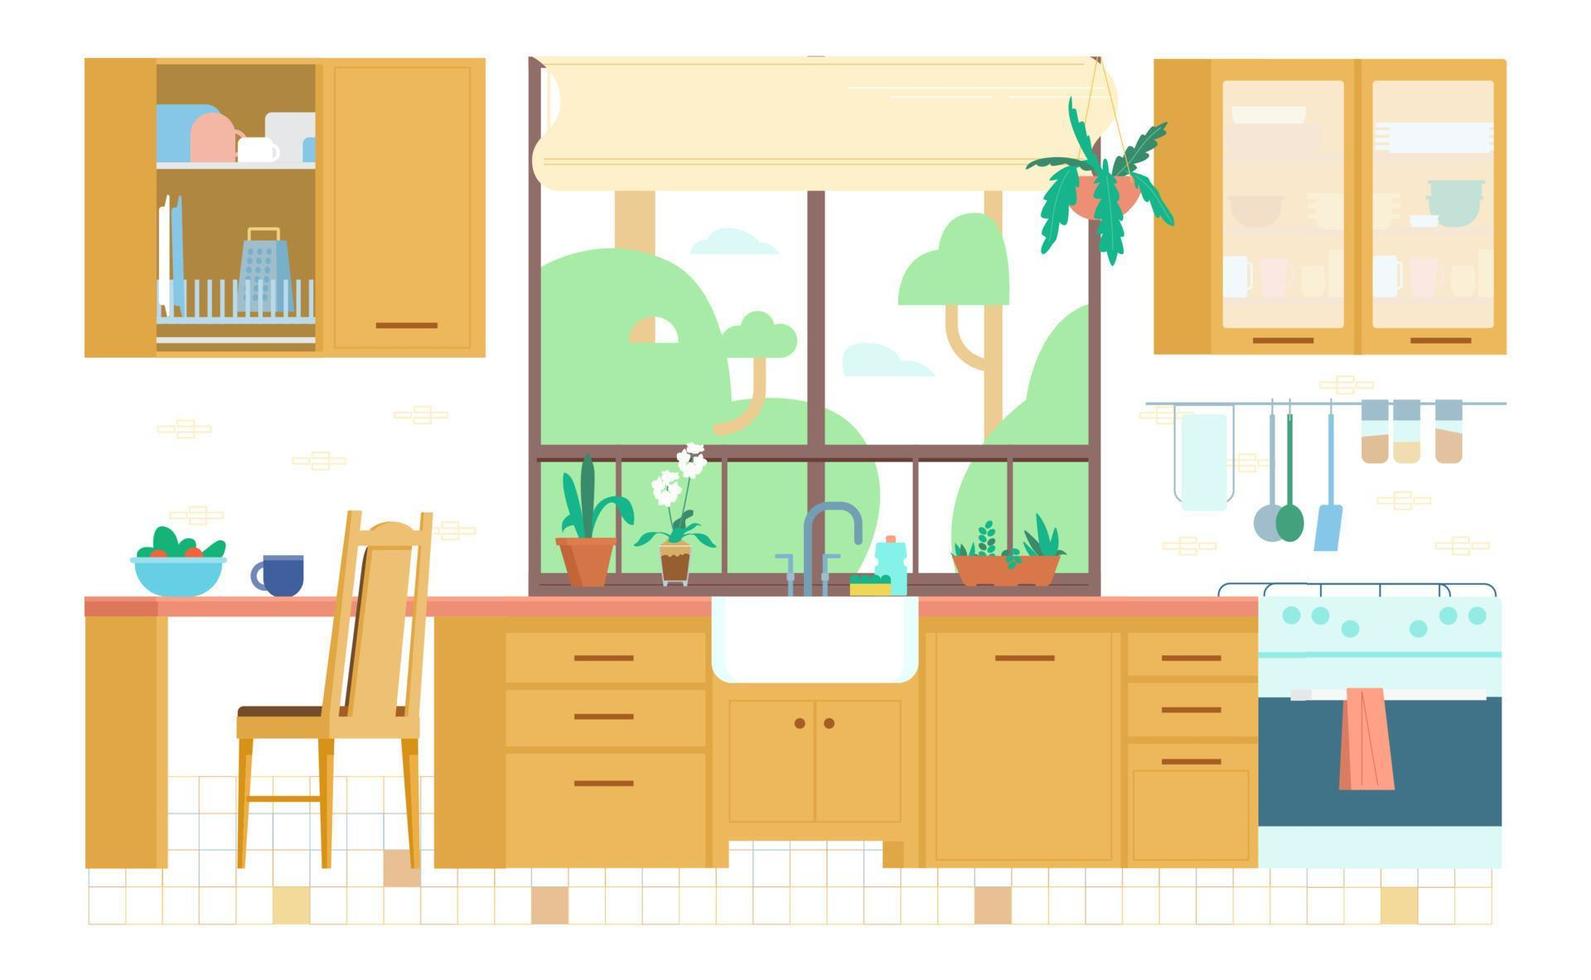 keuken interieur vlak vector illustratie. houten meubilair, venster, planten, fornuis, gebruiksvoorwerpen, planken, wasbak, bord rek.